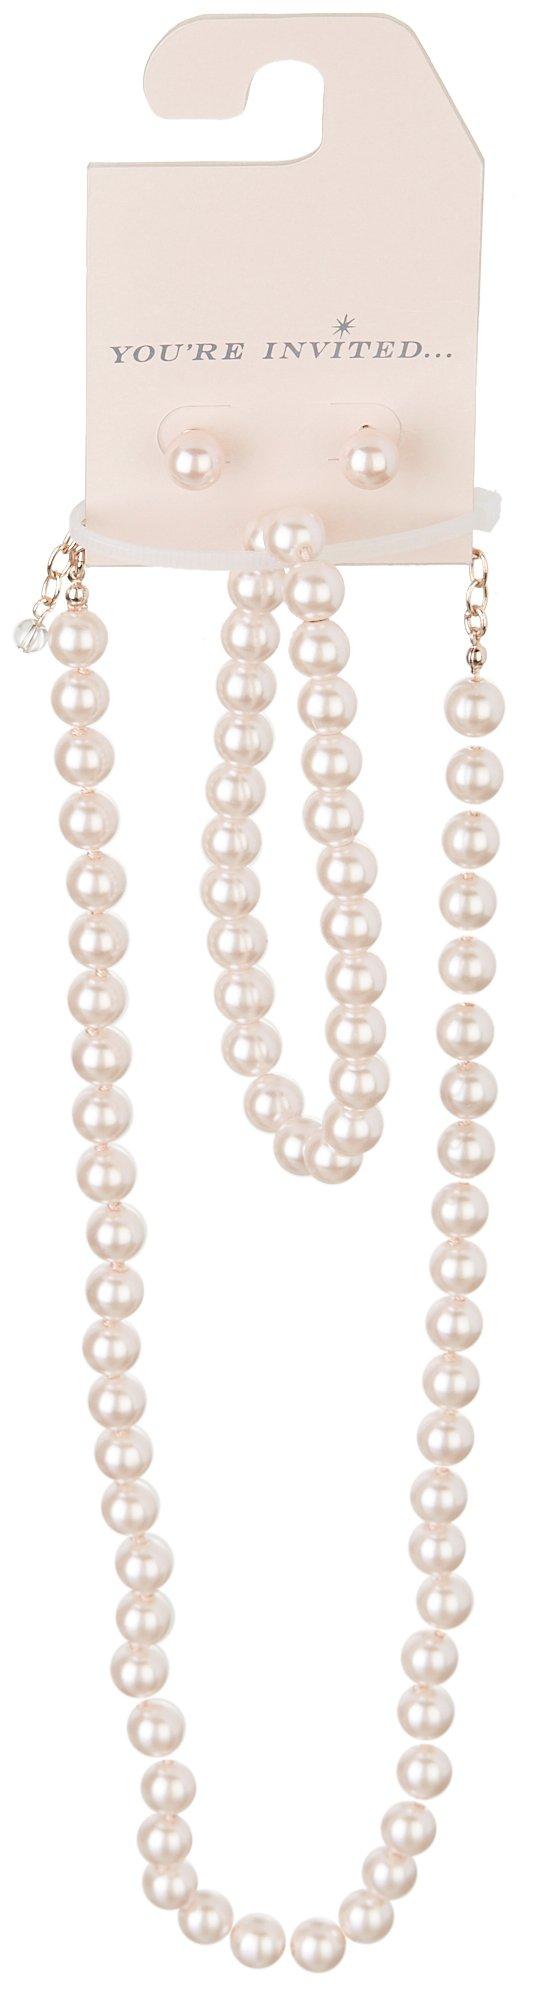 3-Pc. Pearl Necklace Bracelet & Earrings Set